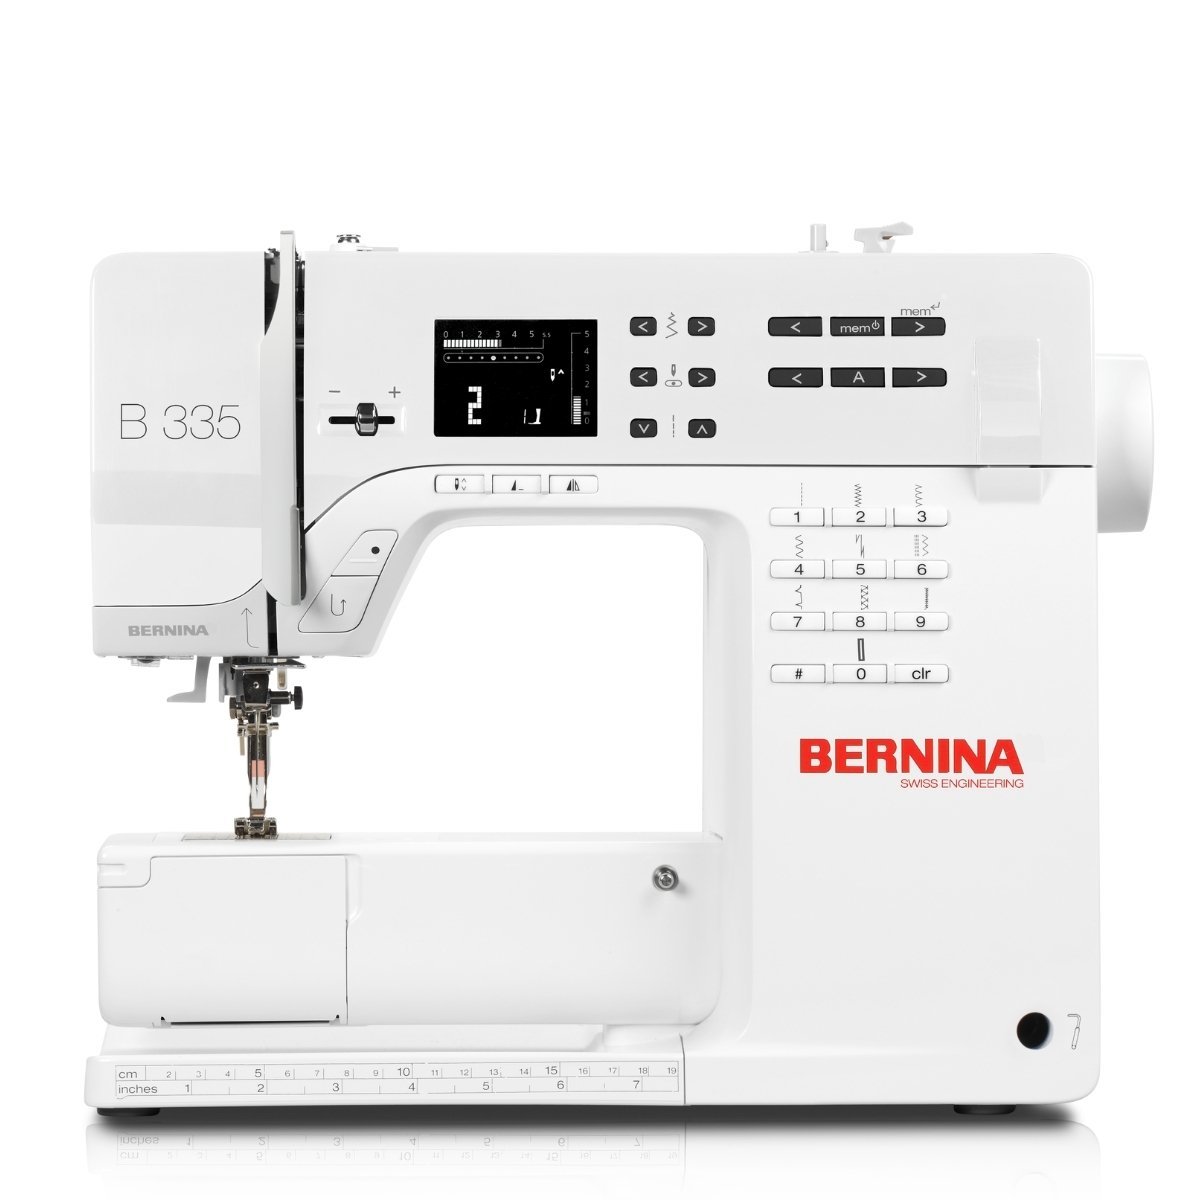 Bernina B335